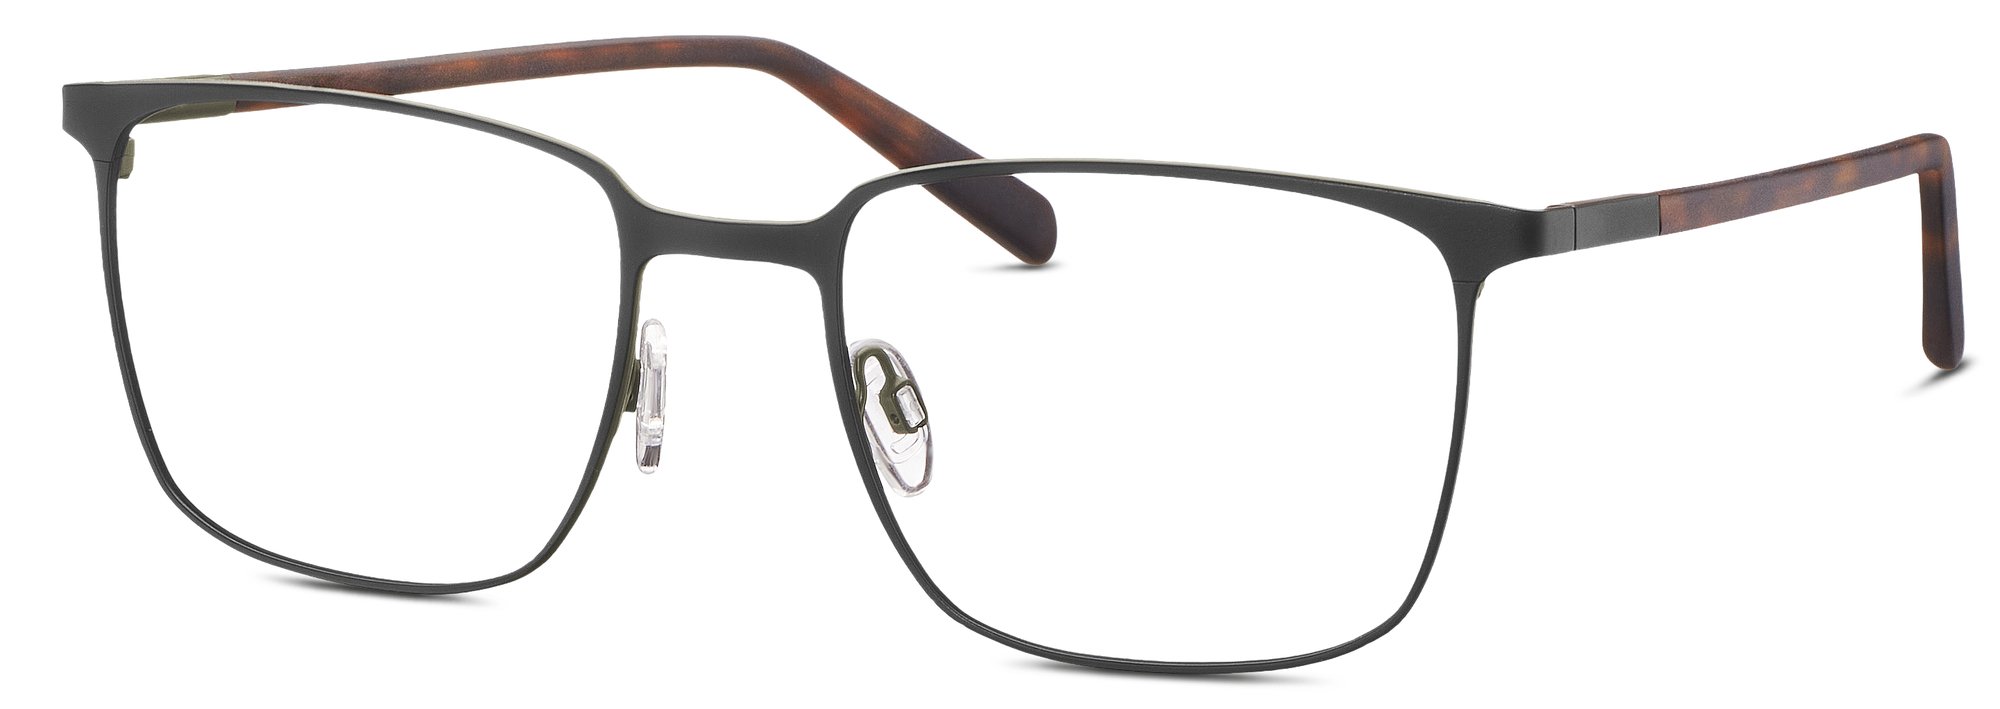 Das Bild zeigt die Korrektionsbrille 862056 10 von der Marke Freigeist in schwarz-oliv.